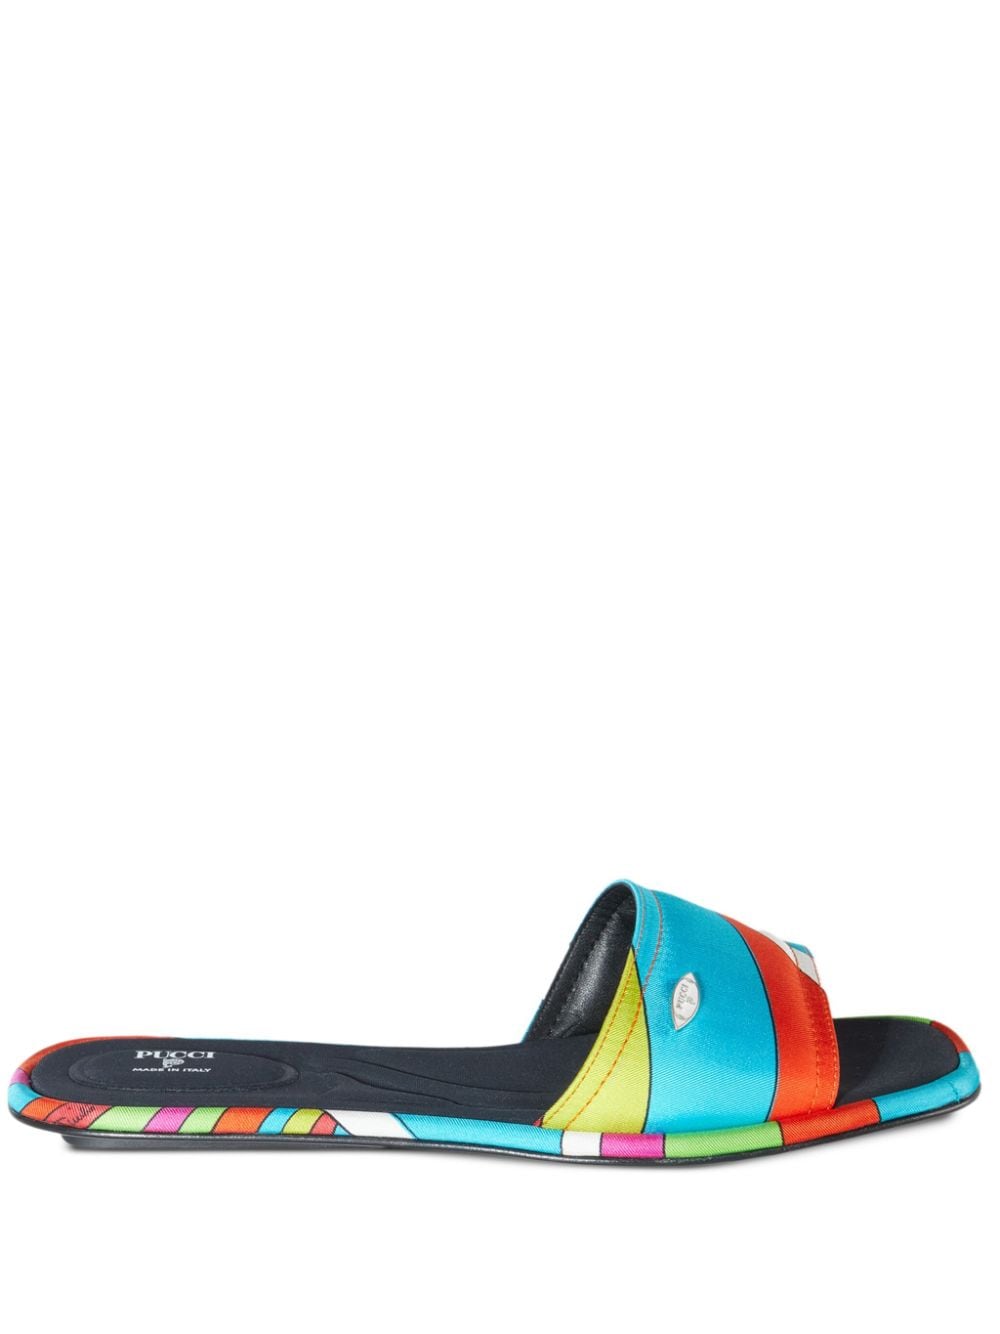 Pucci Yummy Multicolour Sandals